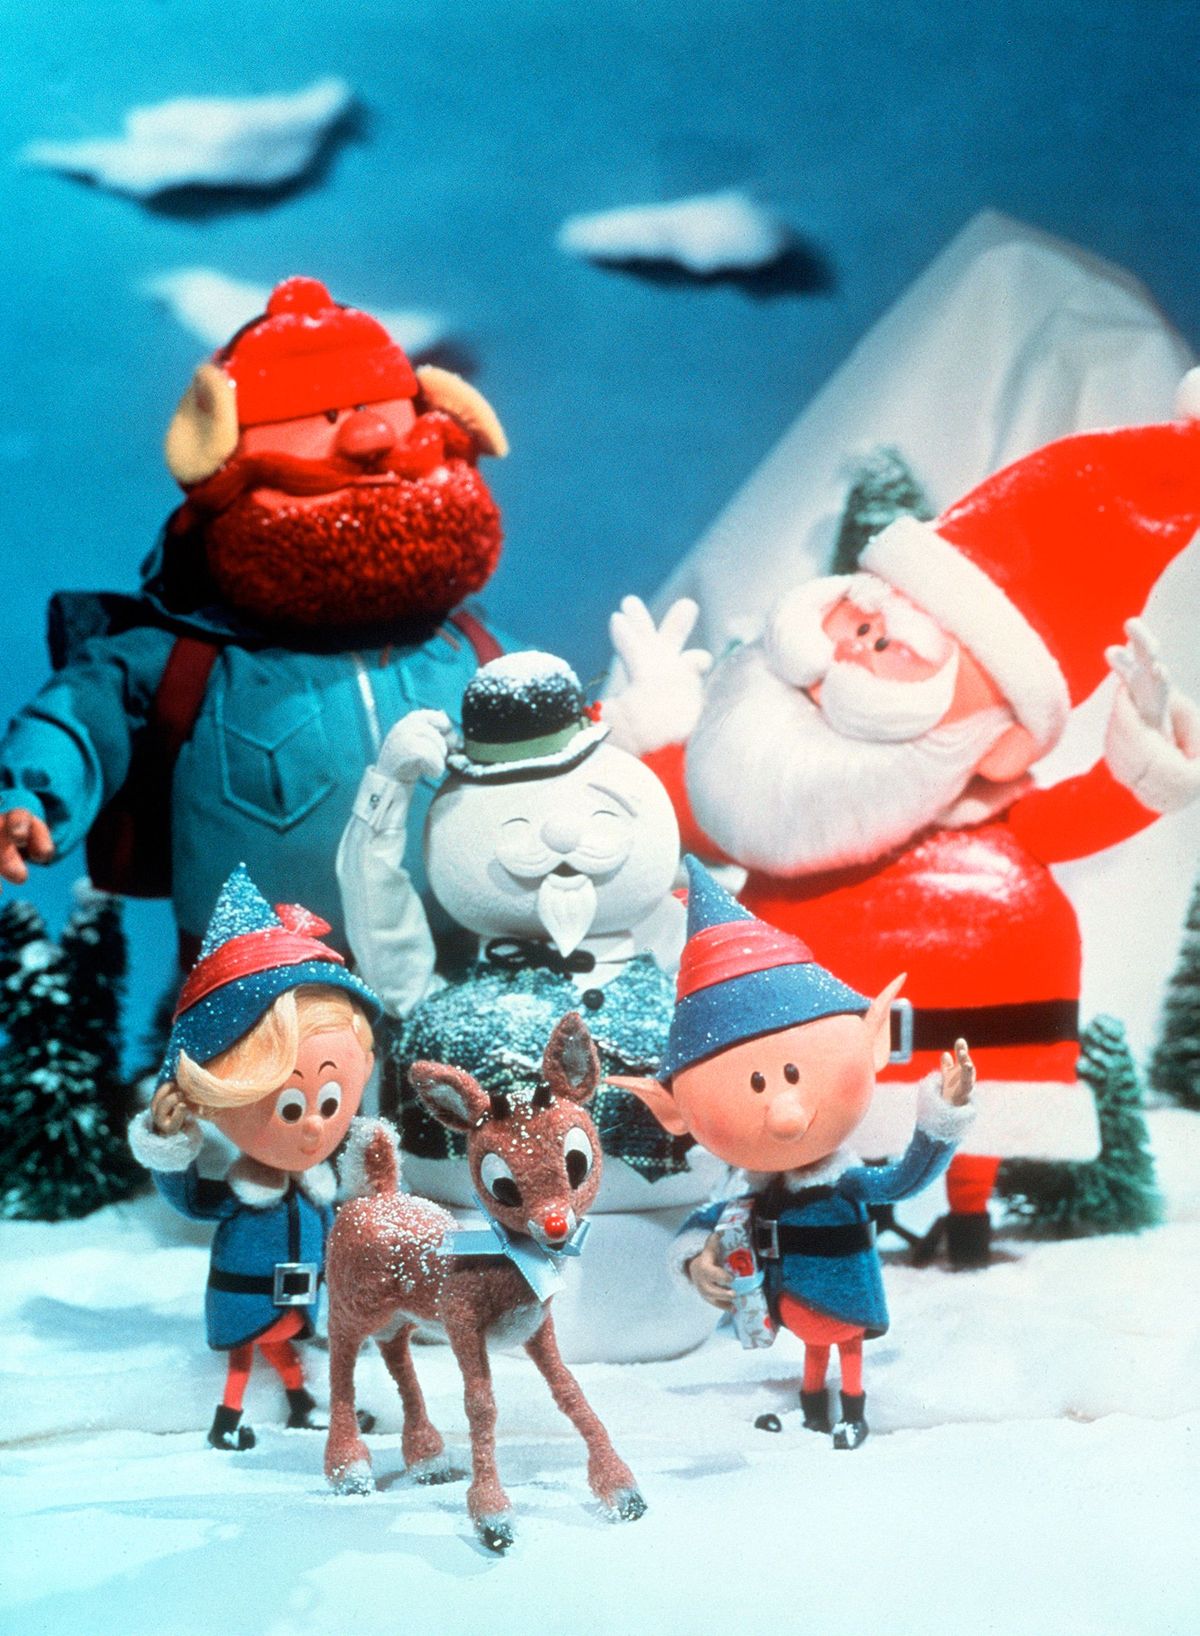 Kas kirjaviga muutis Rudolphi teleri kogemata eriliseks avalikuks domeeniks?